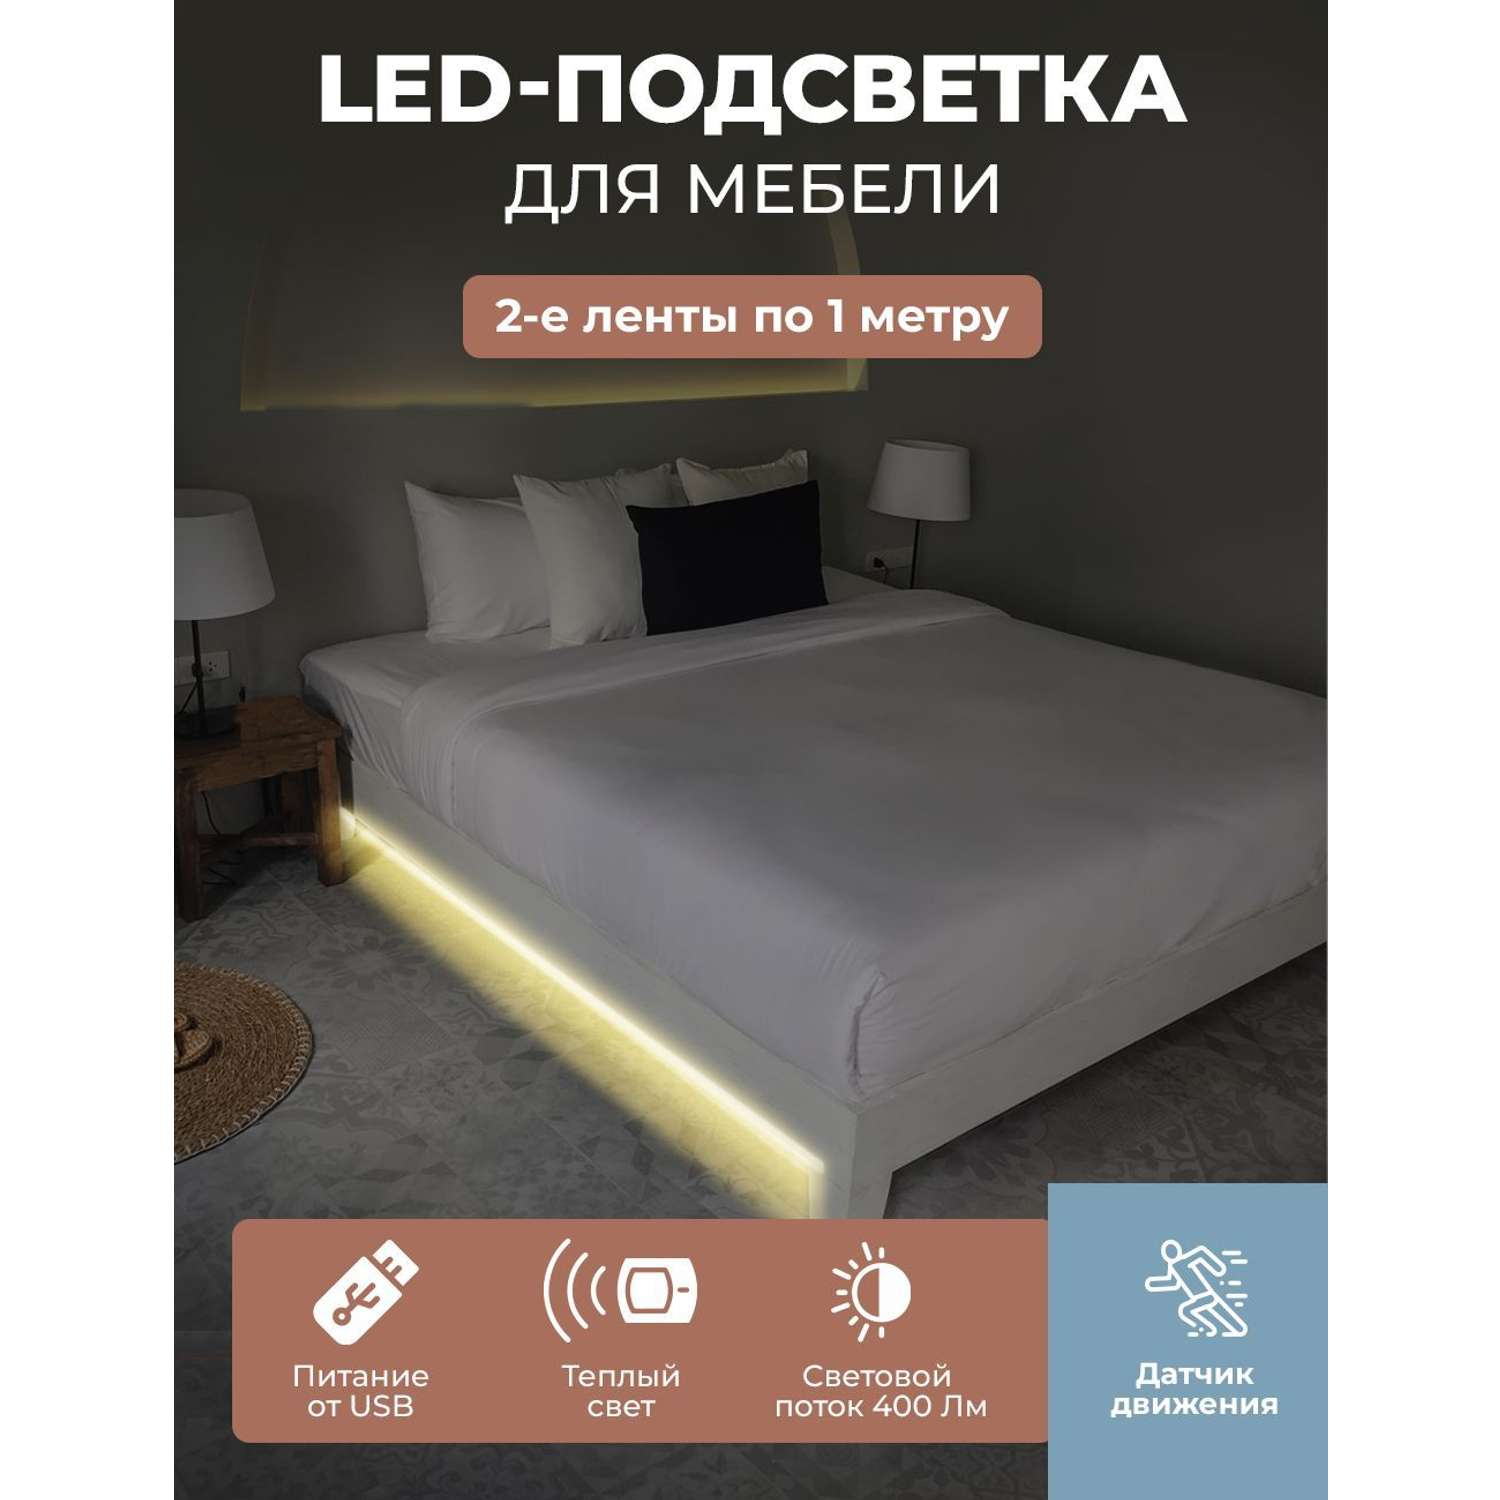 LED подсветка ГЕЛЕОС для двуспальной кровати светодиодная лента 2х1м теплый свет USB 5V - фото 3